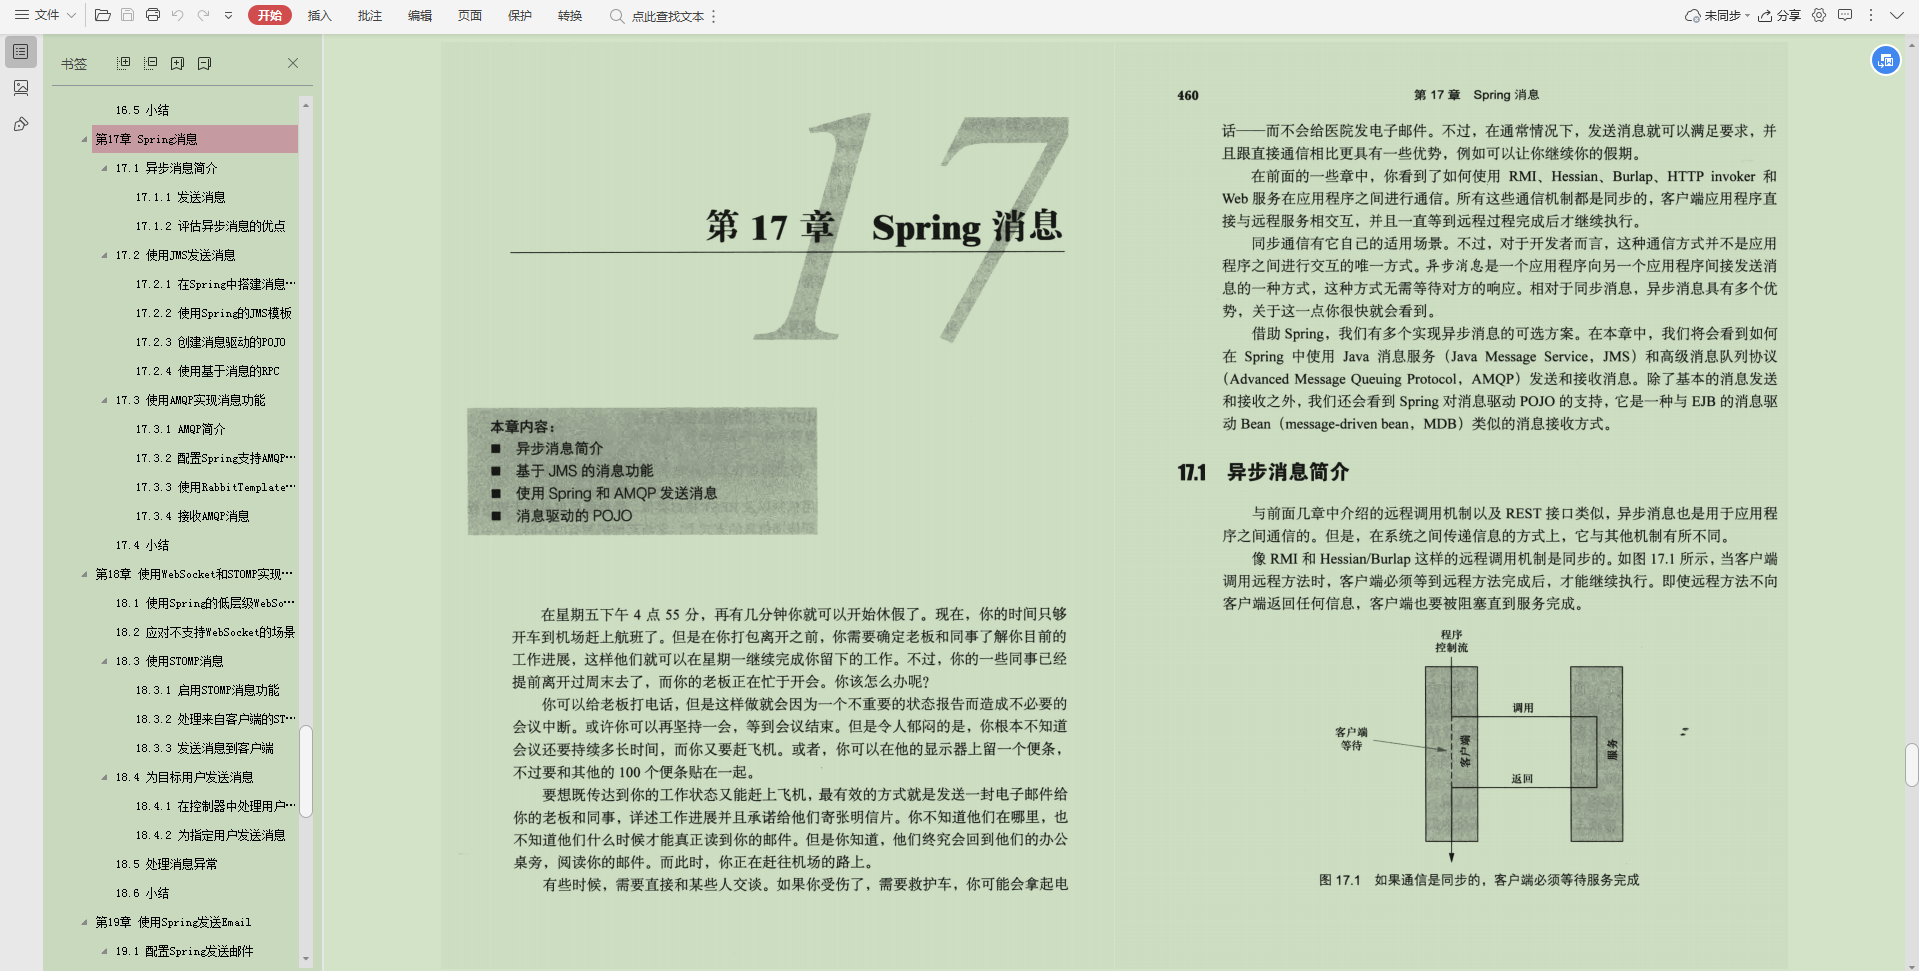 ¡Excelente!  El Manual de primavera de Alibaba Intranet es demasiado completo, la información interna es realmente fragante